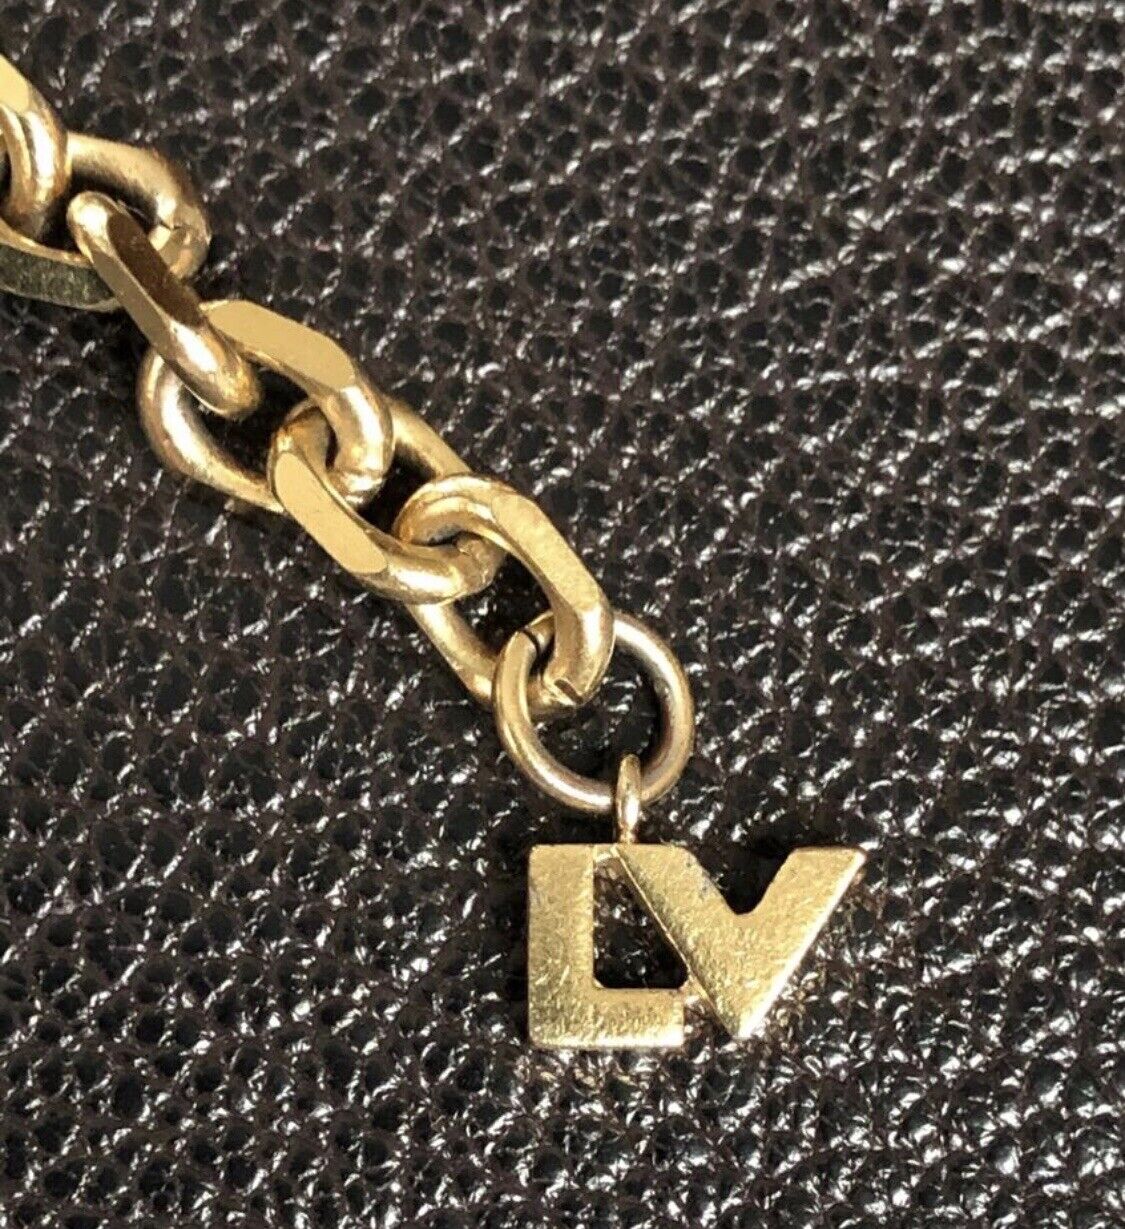 Louis Vuitton Gold Tone LV & Me Letter L Charm Bracelet Louis Vuitton